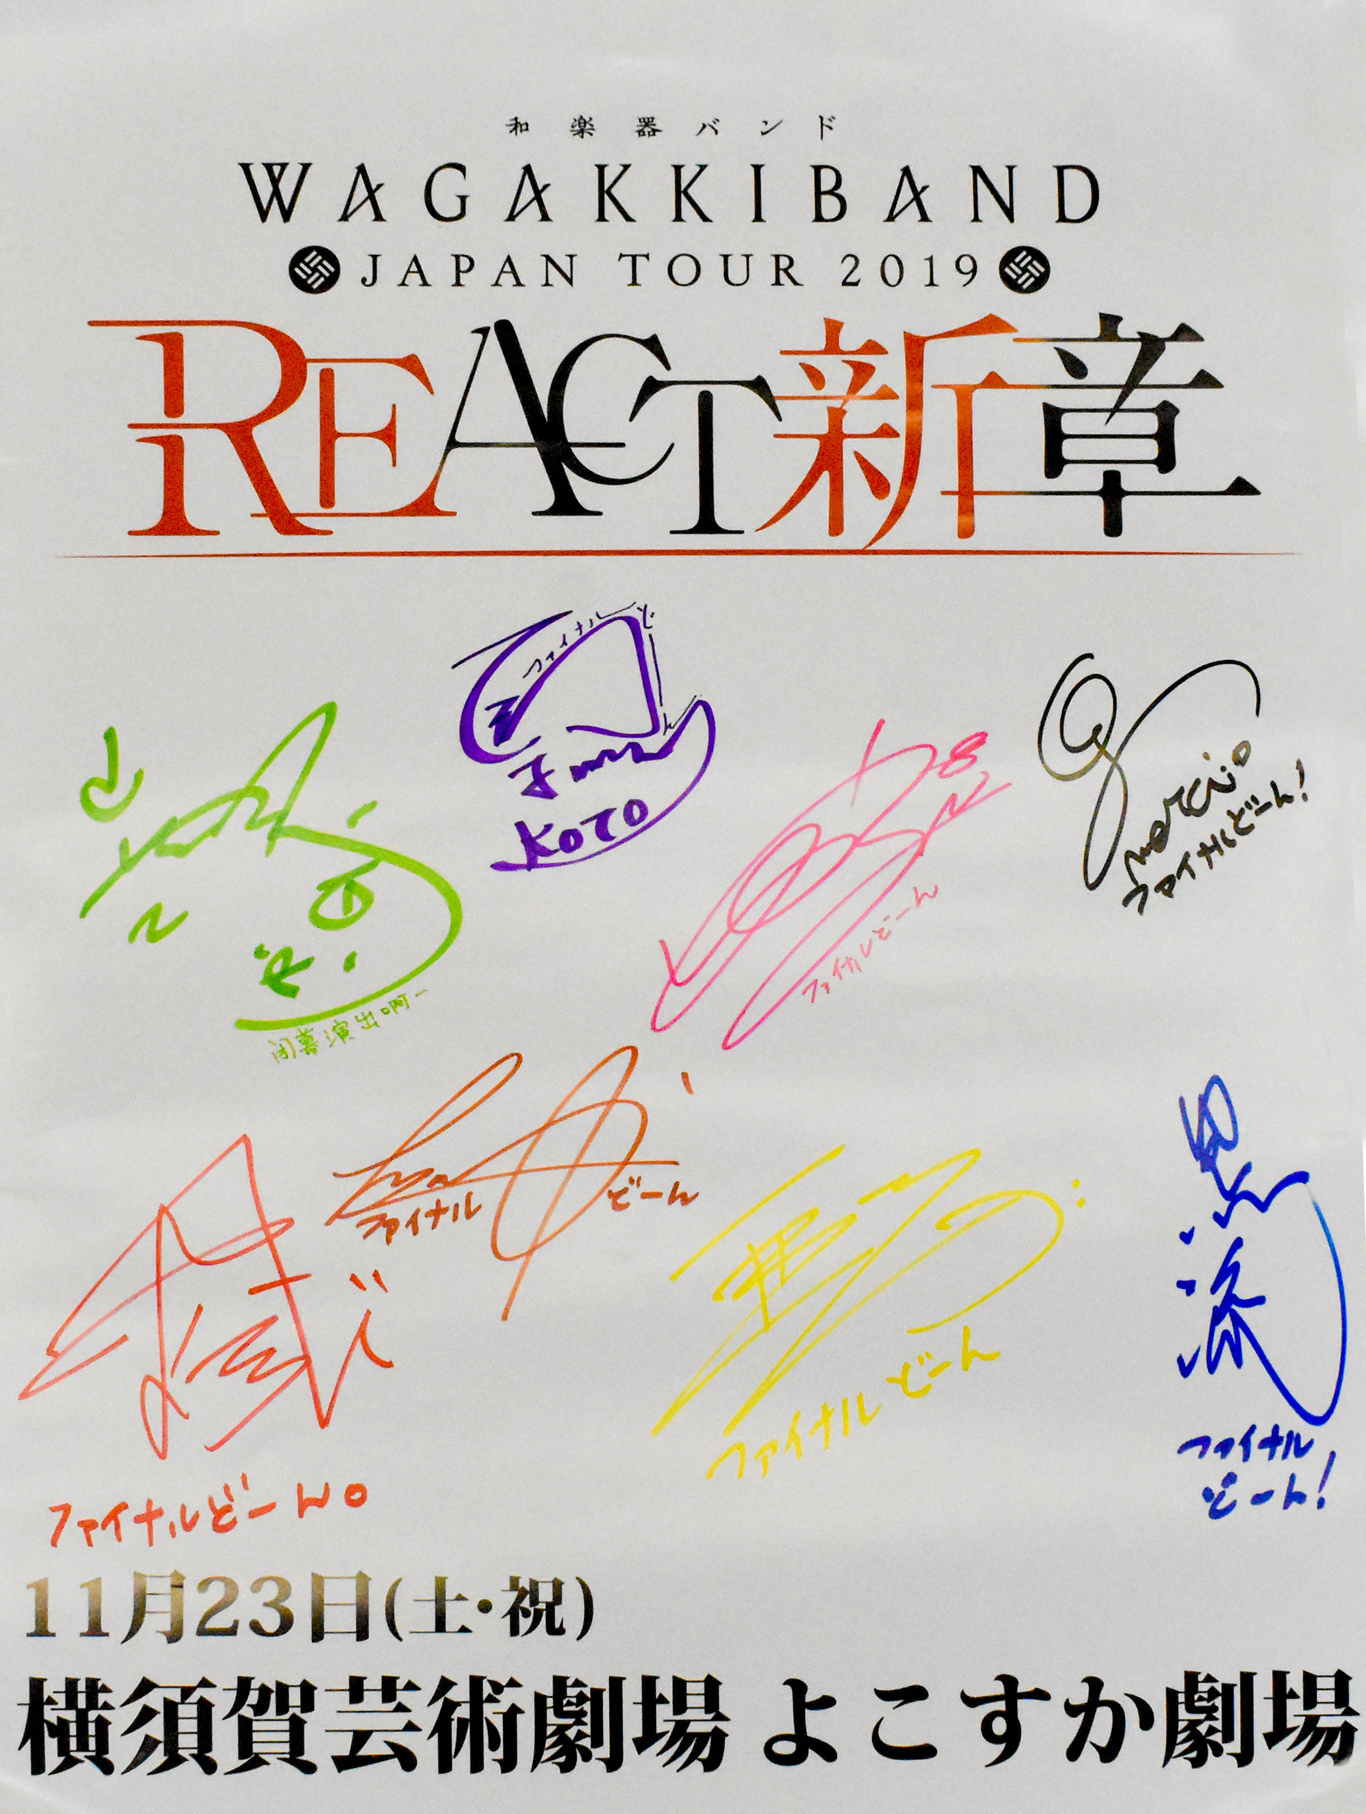 和楽器バンドjapan Tour 19 React 新章 アンケートご協力のお願い 和楽器バンド Official Website